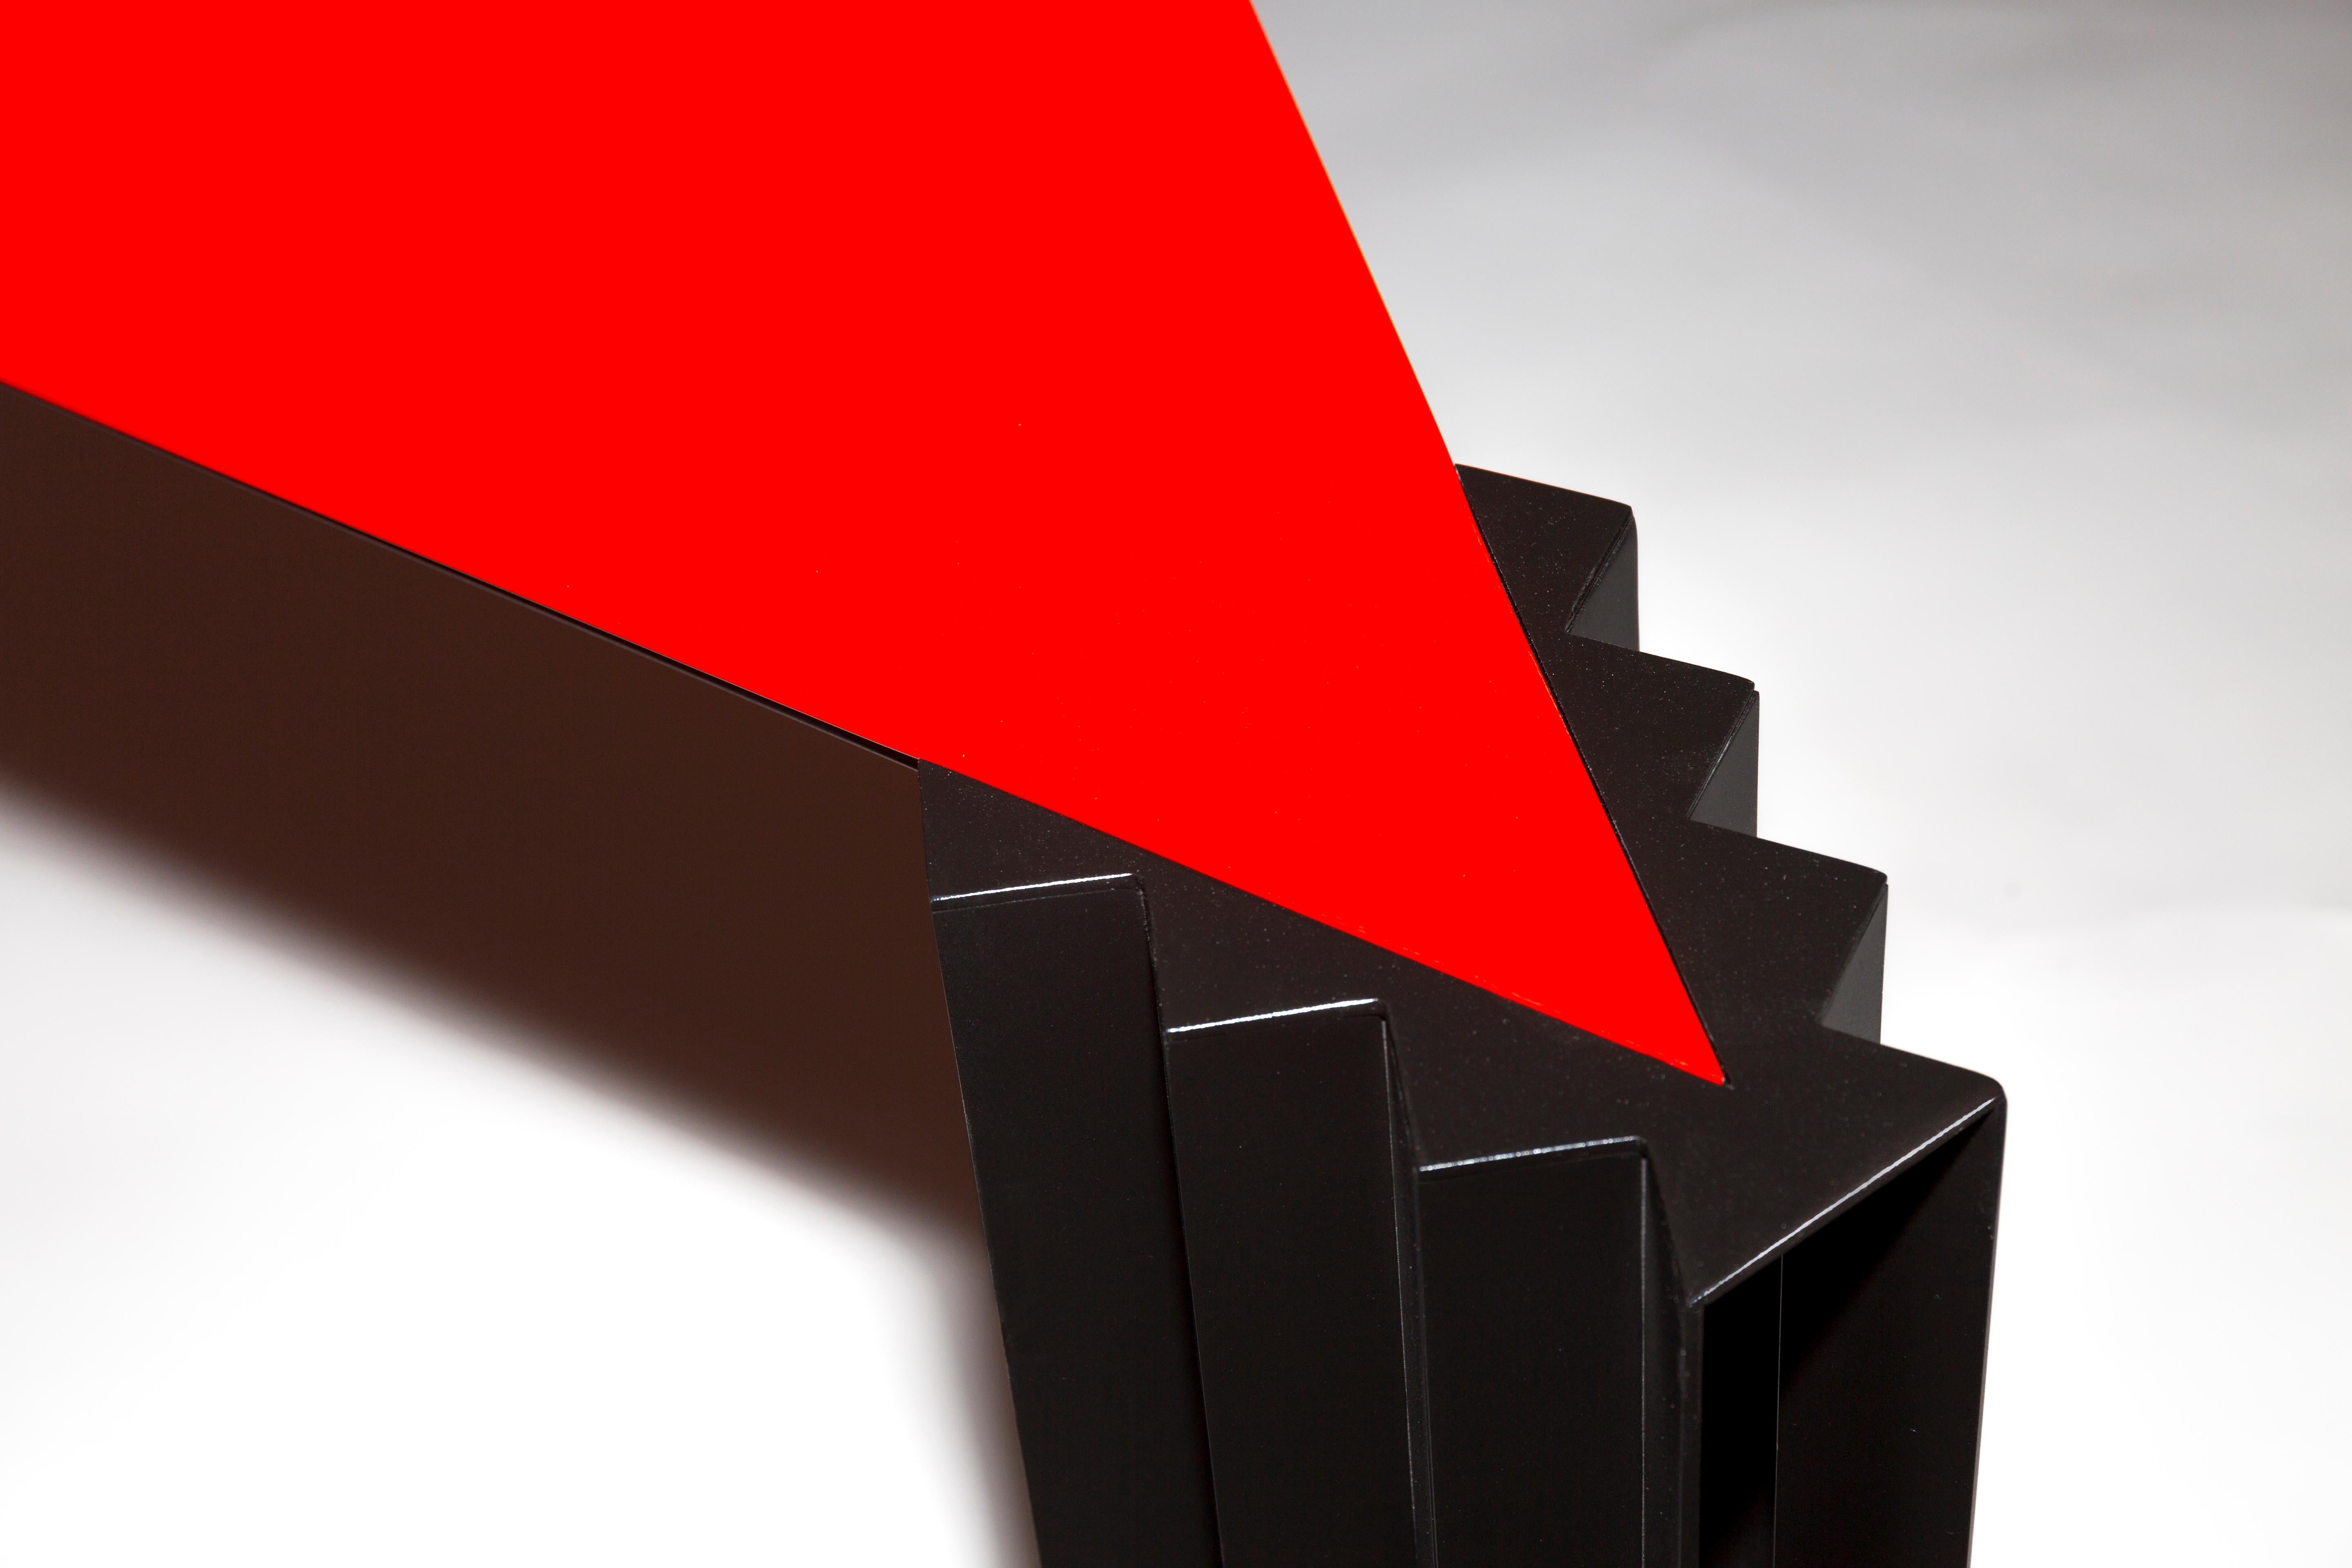 Trois coins, trois colonnes est une table dynamique à souhait.  Un triangle d'acier rouge brillant s'imbrique parfaitement dans la surface des trois pieds, qui explorent chacun une nouvelle forme.  Sur l'une d'elles, des barres métalliques se